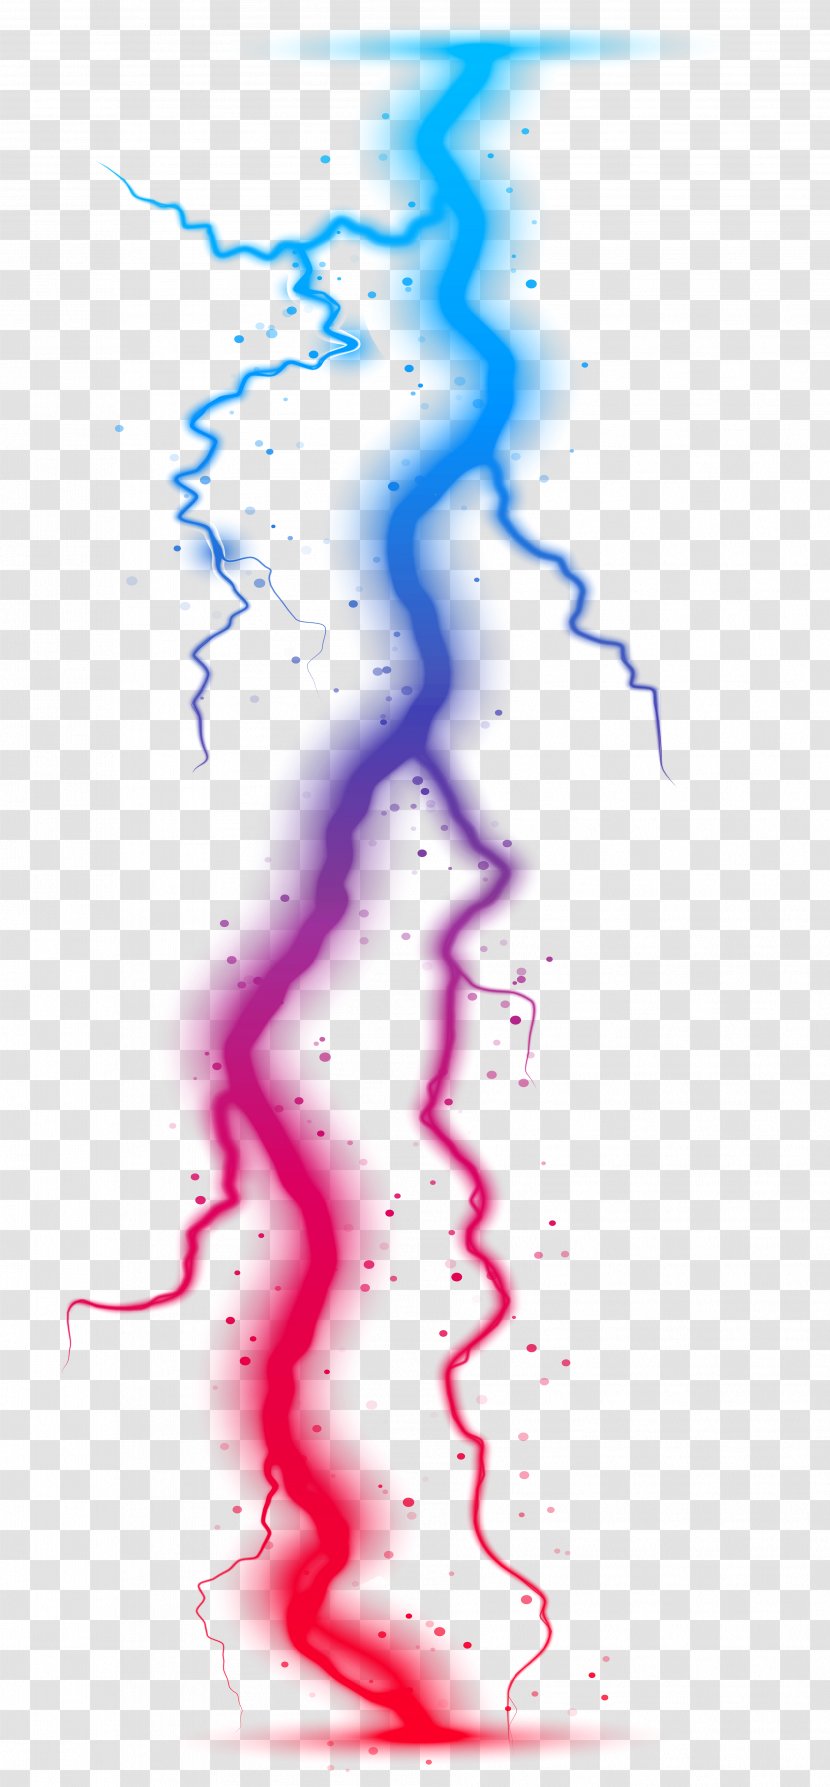 Lightning MFi Program - Thunderstorm - Colorful Transparent Clip Art Image Transparent PNG